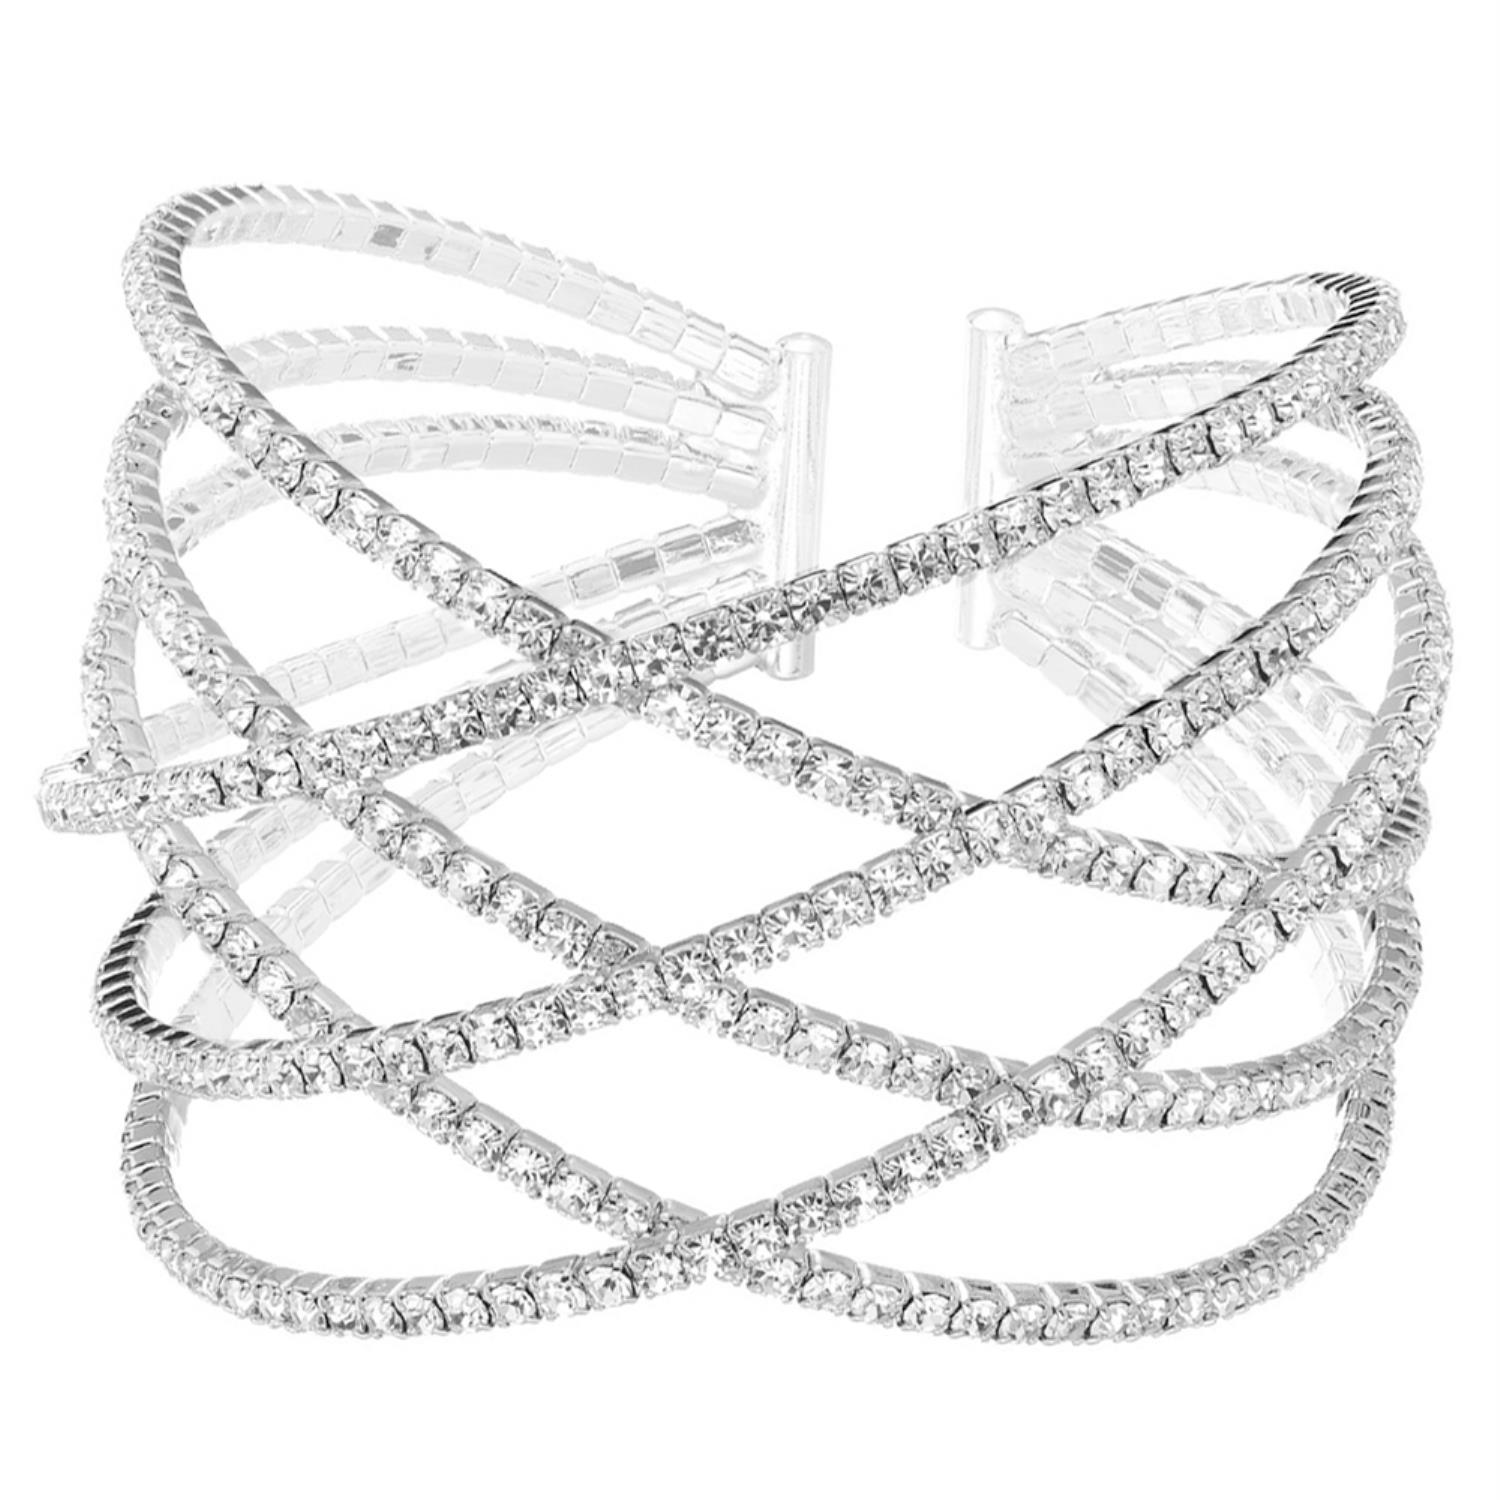 Rhinestone Six Row Layer Wire Bracelet - Tigbul's Fashion